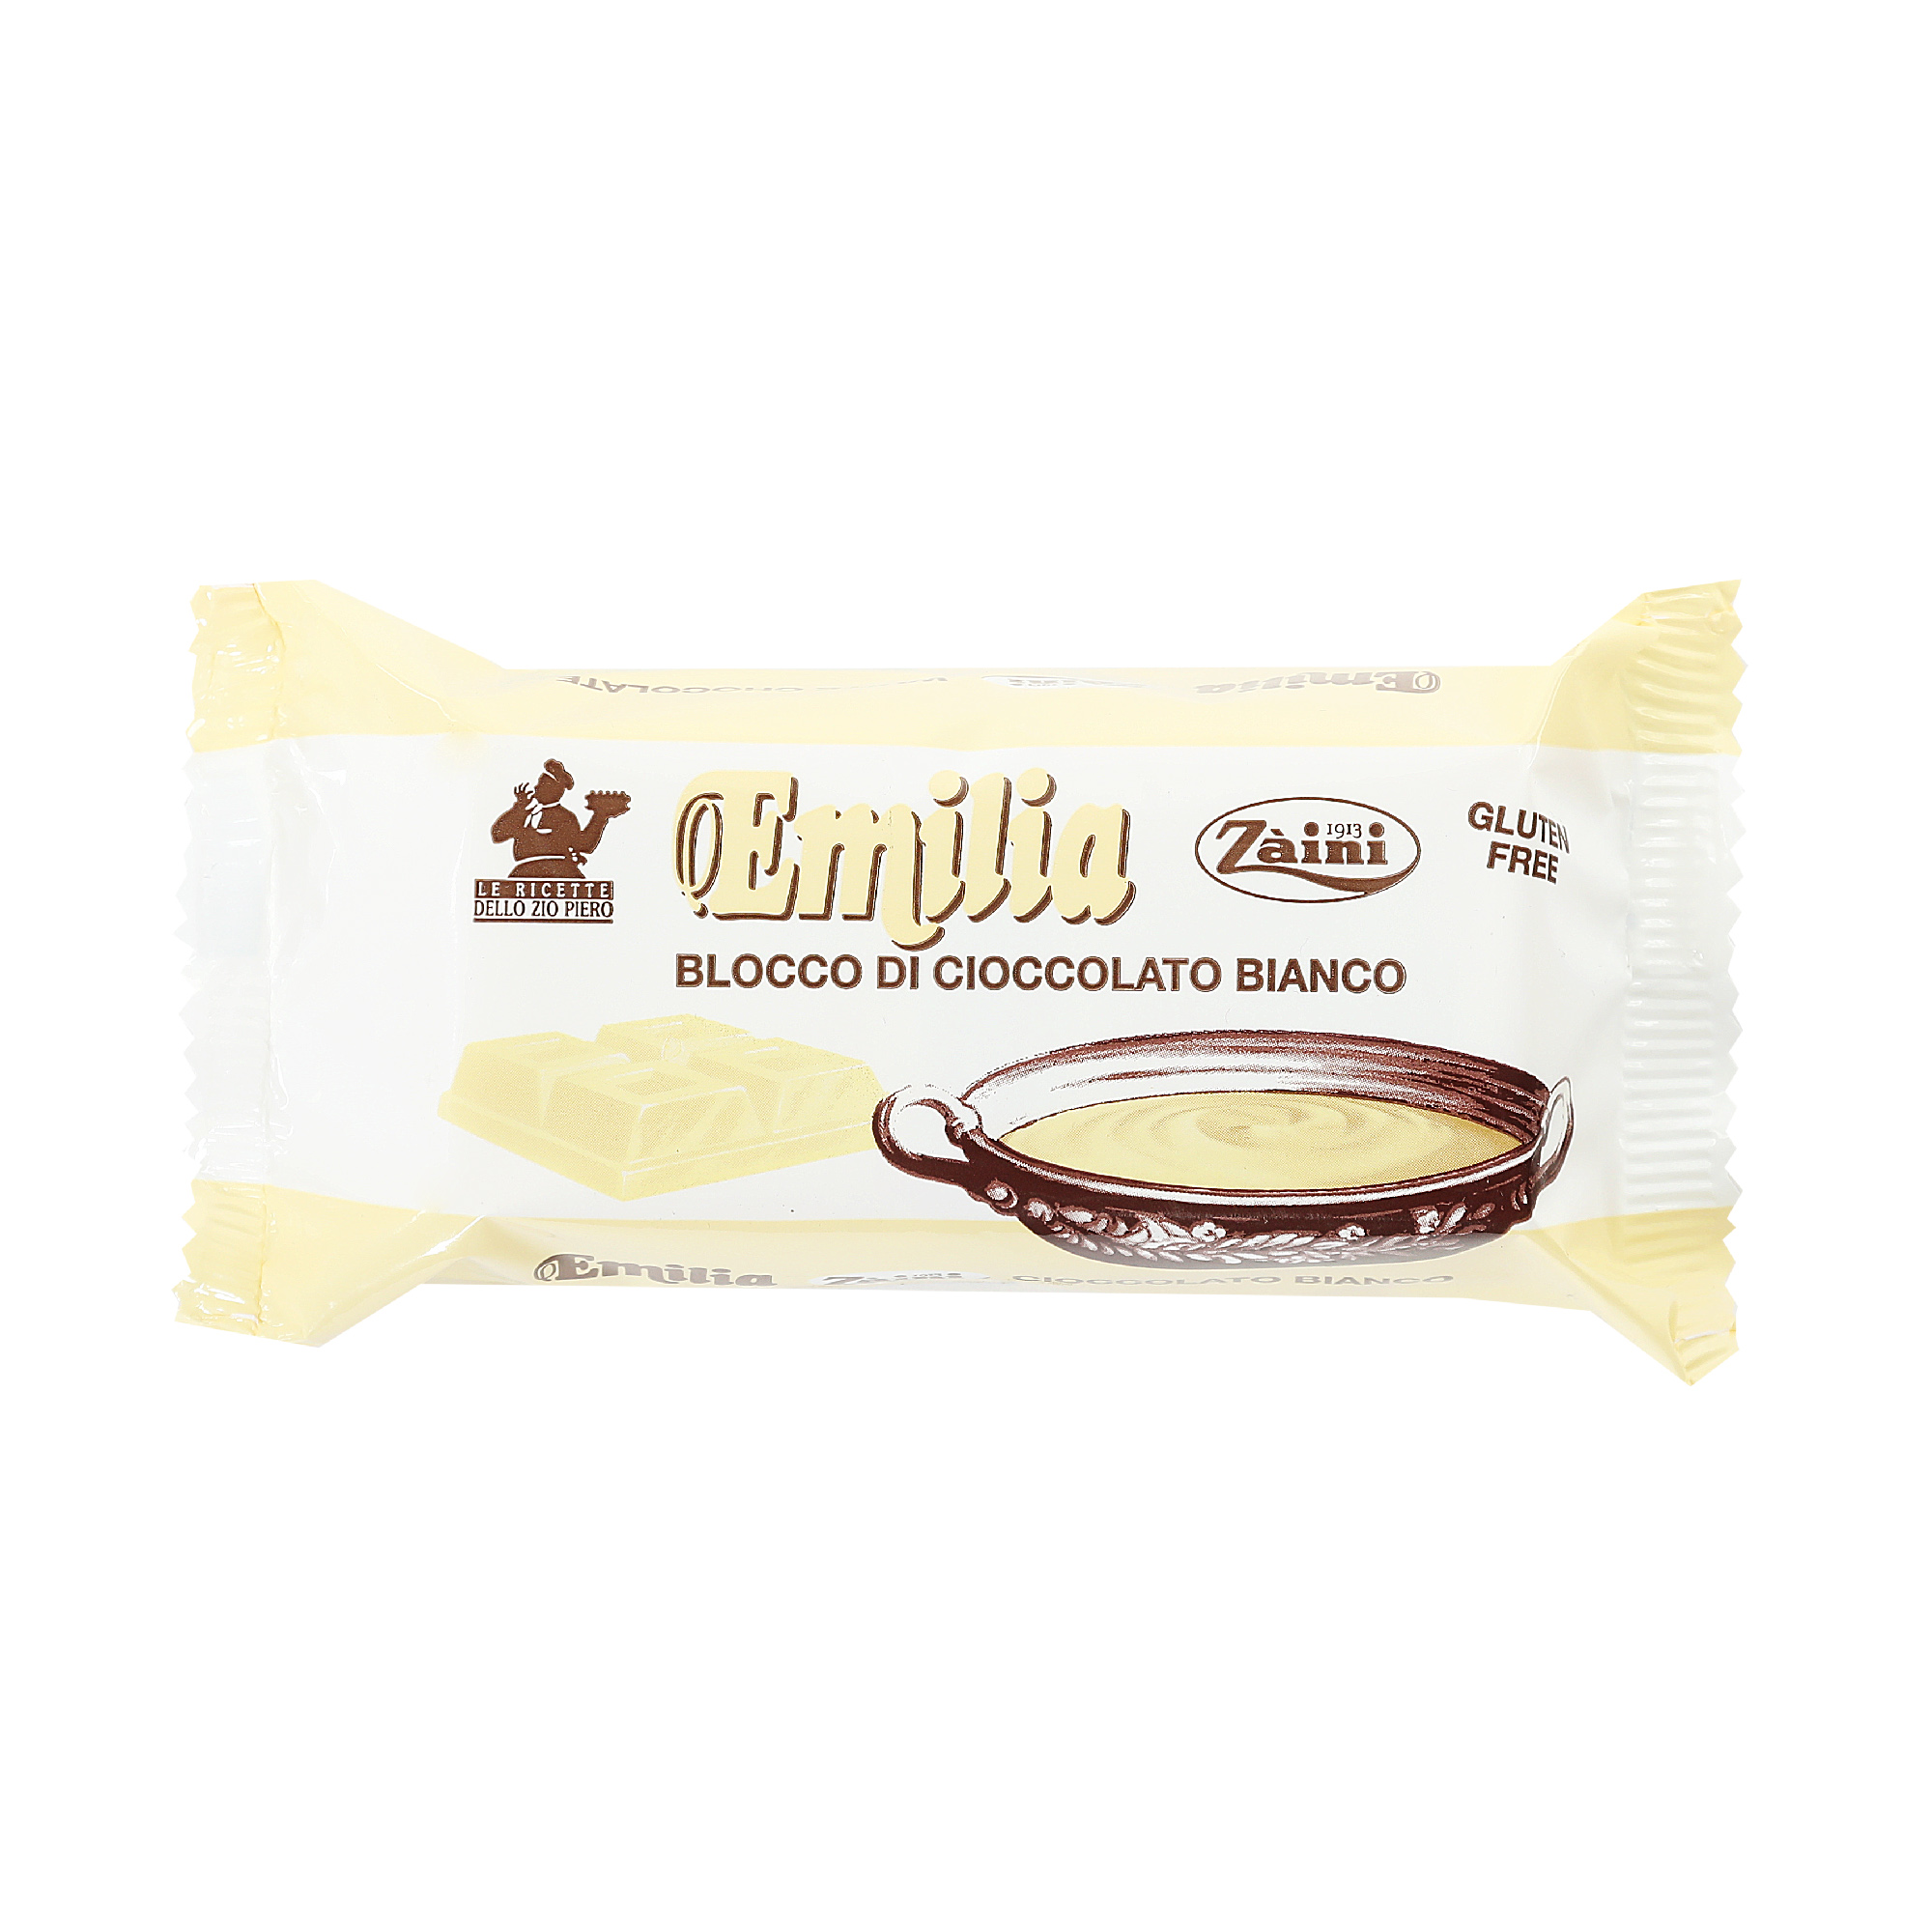 Шоколад белый Zaini Emilia, 200 г воск для депиляции для разогрева в свч печи 3109 2 белый шоколад 100 г